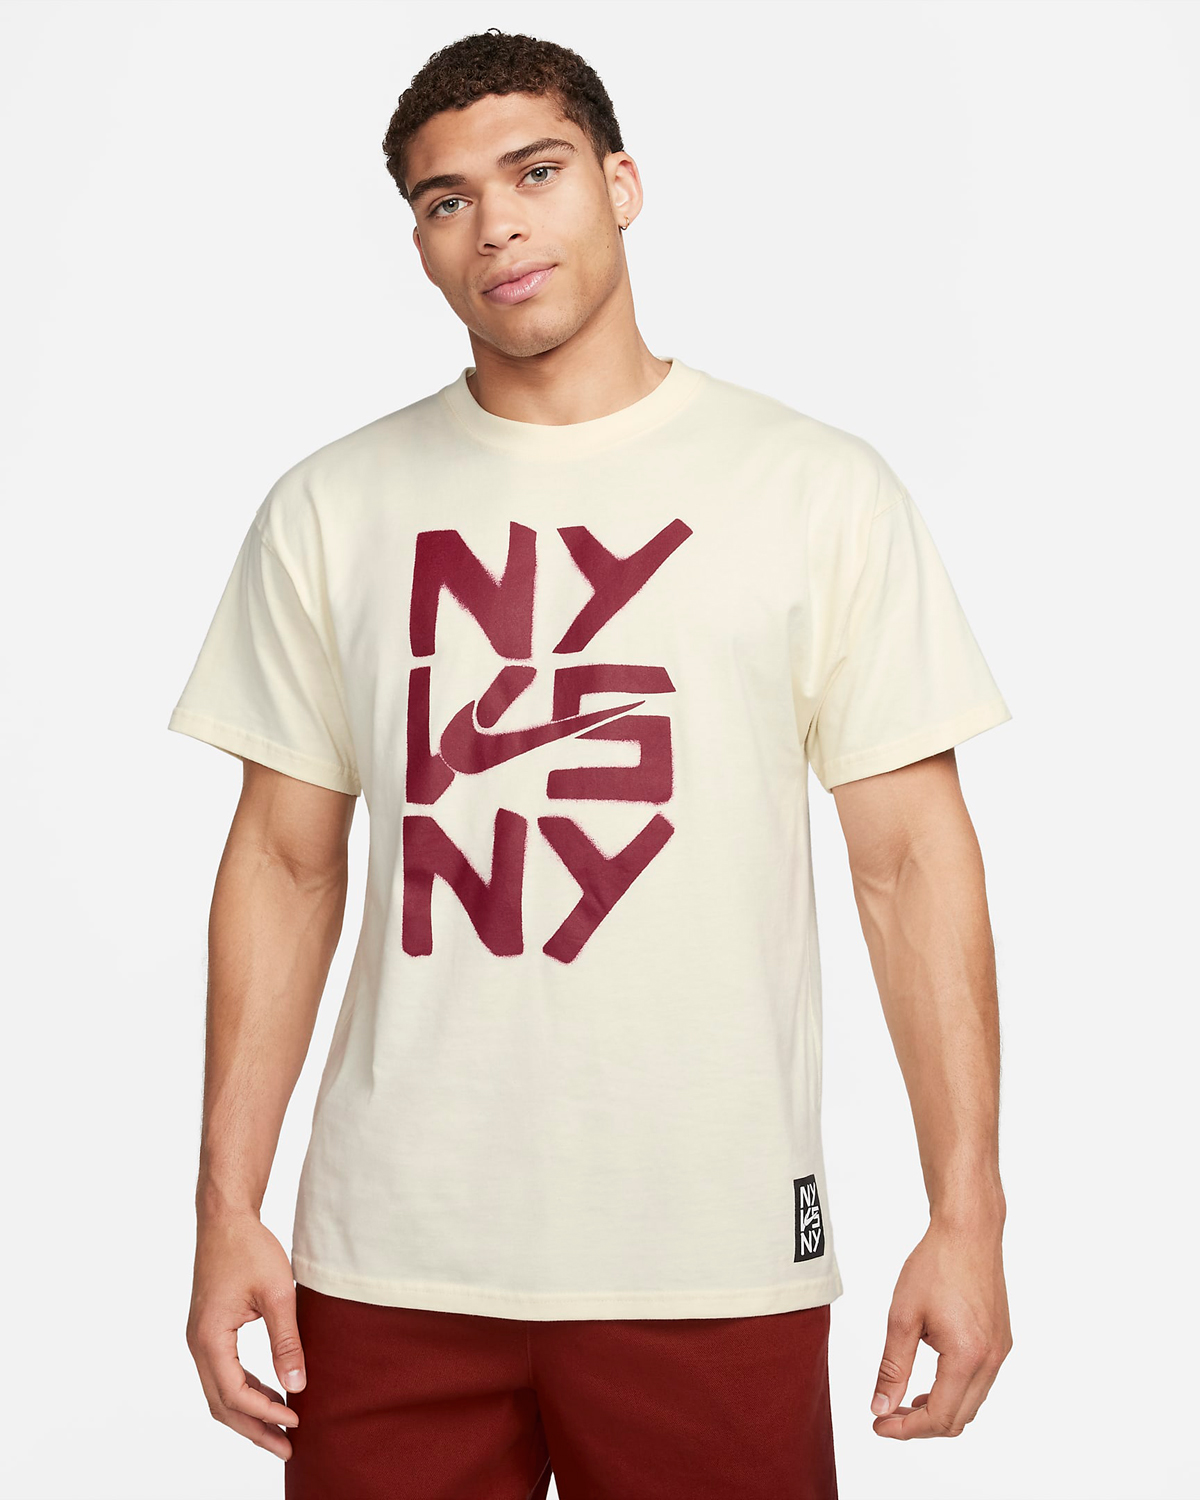 Nike-Sportswear-NY-vs-NY-T-Shirt-Coconut-Milk-Noble-Red-1